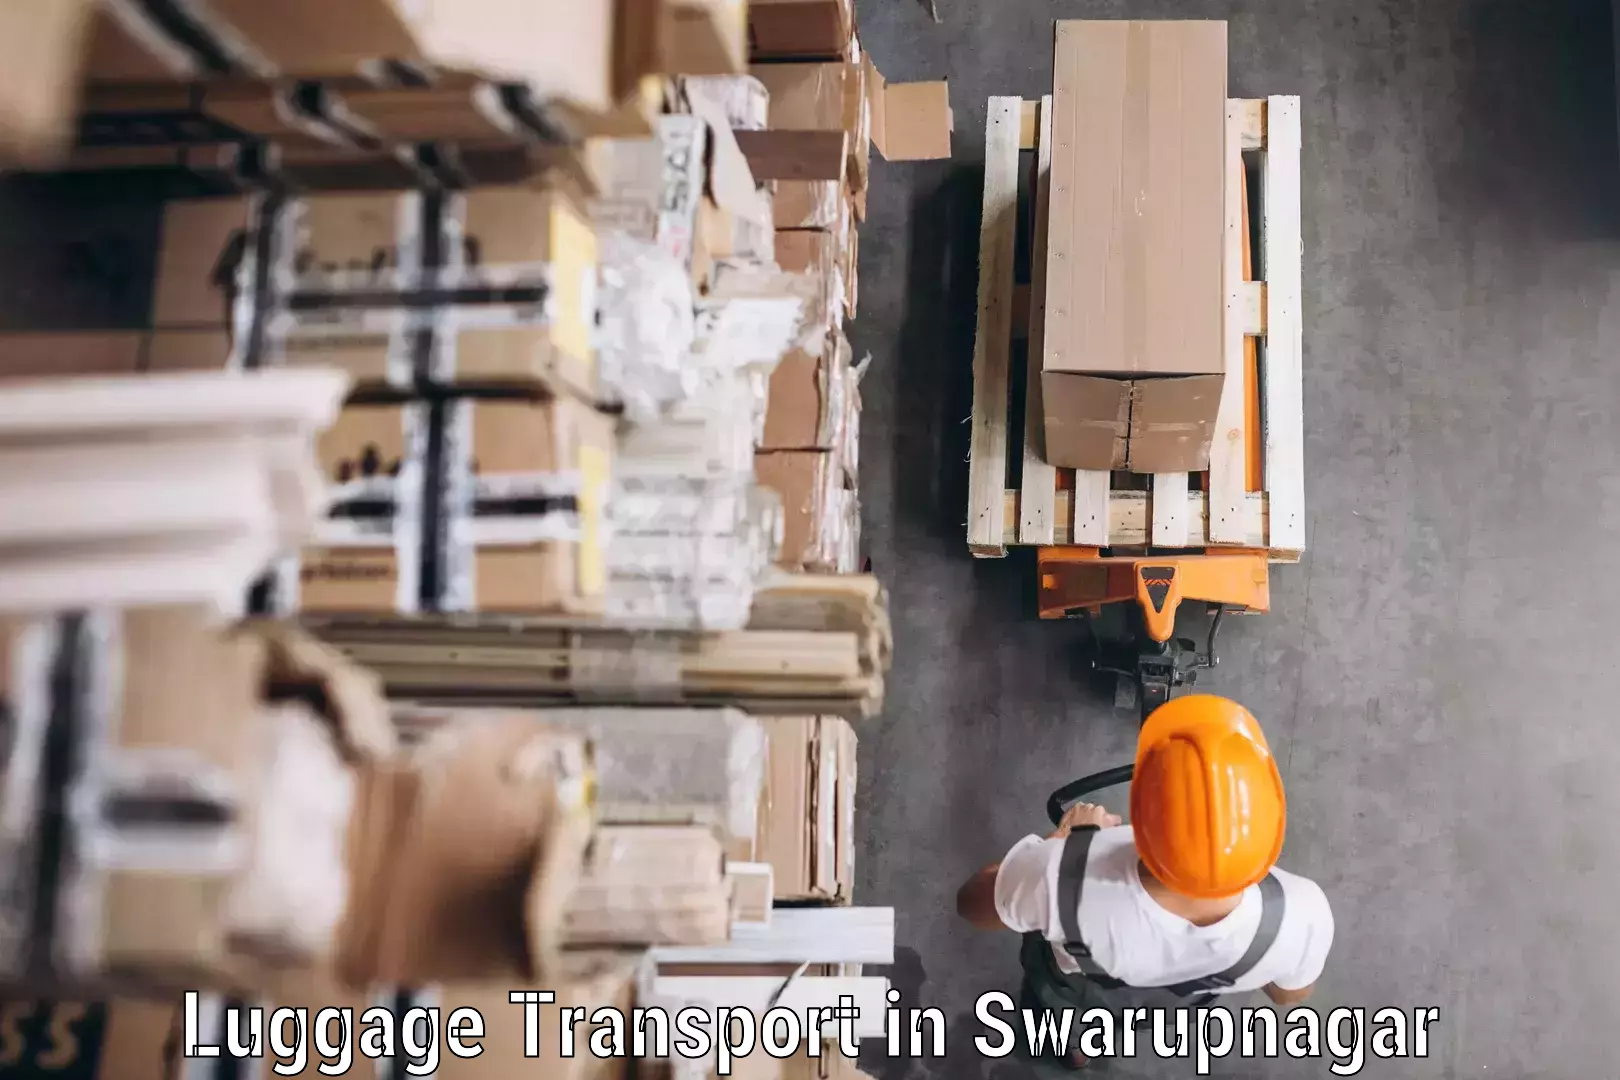 Baggage delivery optimization in Swarupnagar